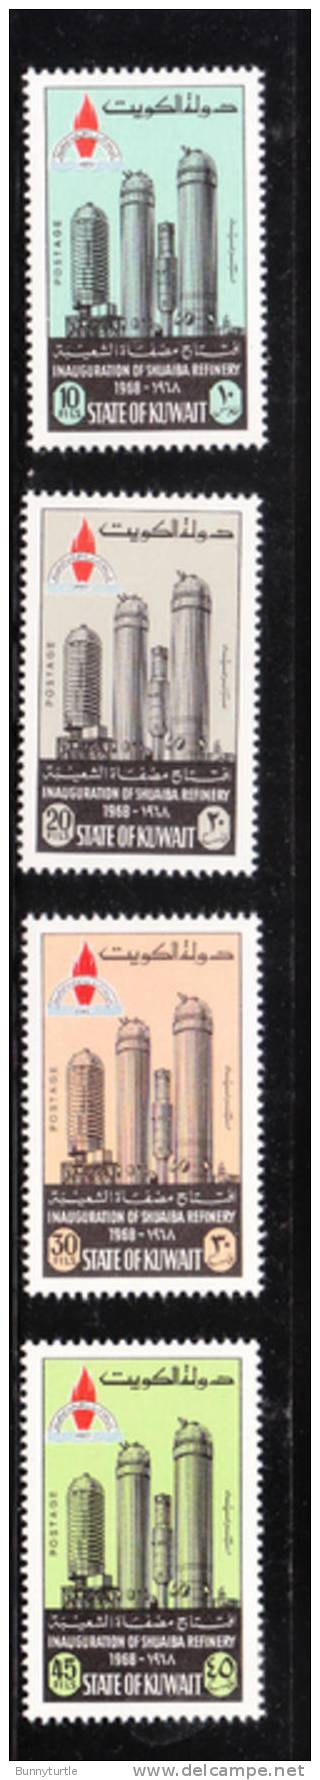 Kuwait 1968 Opening Of Shuaiba Oil Refinery MNH - Kuwait